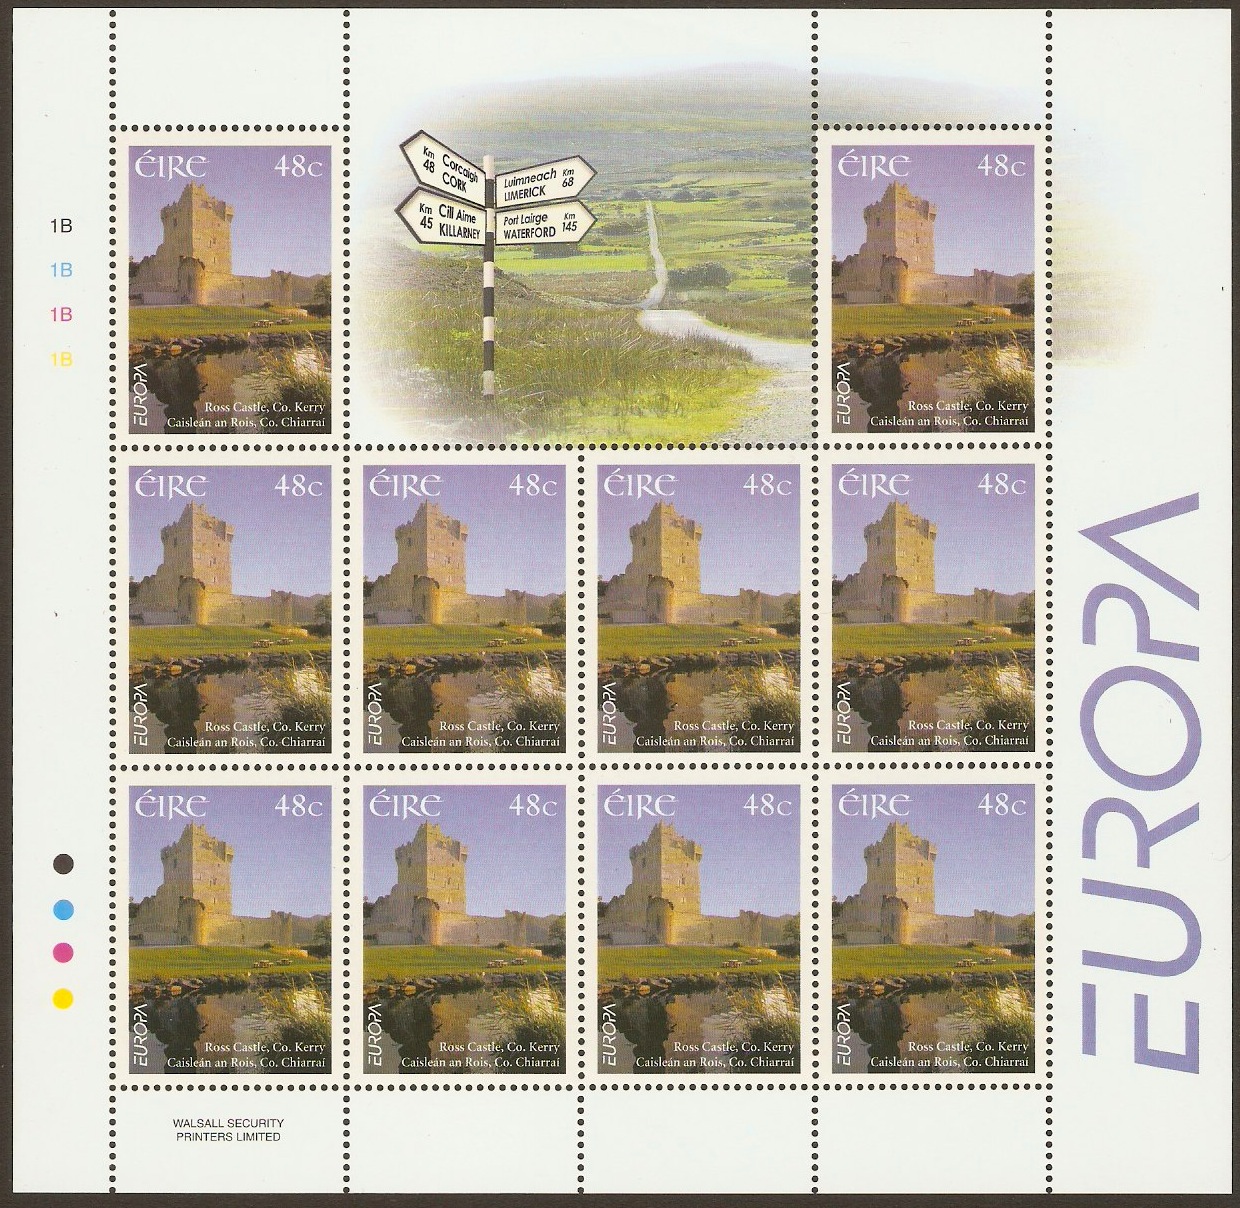 Ireland 2004 48c Europa Stamp. SG1649.